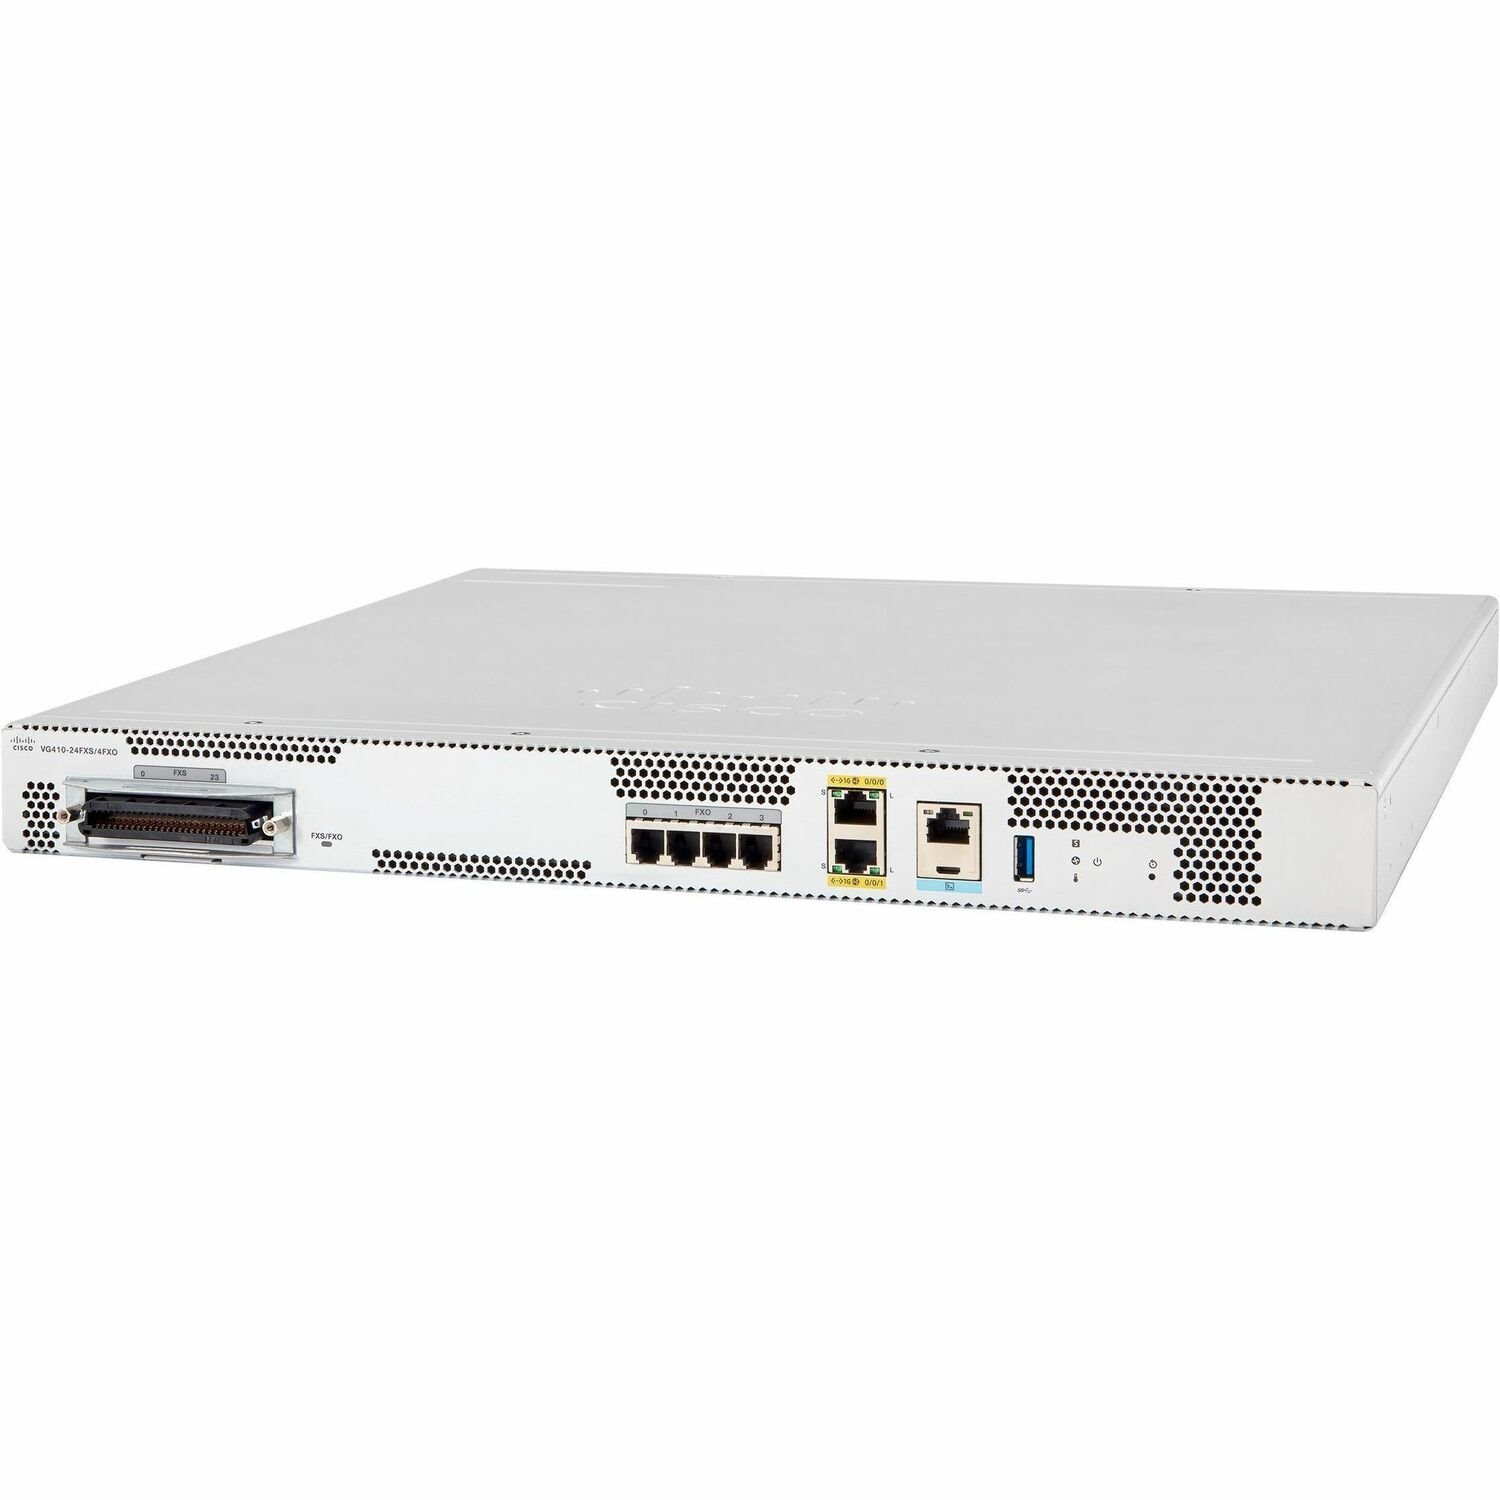 Cisco VG410 VoIP Gateway